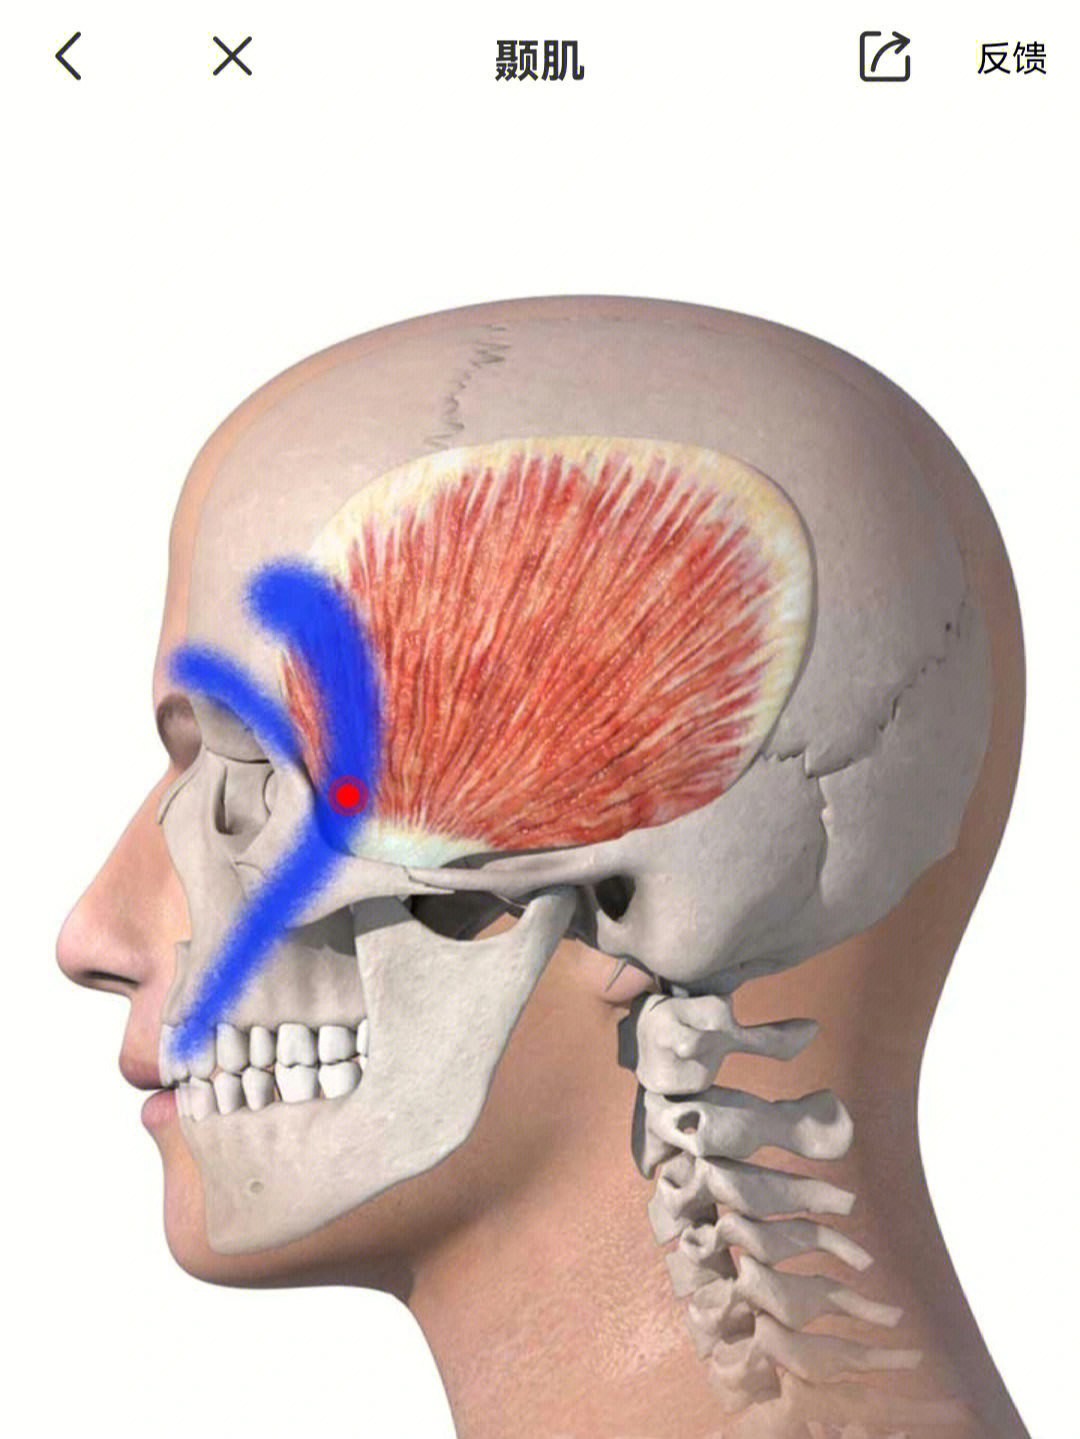 p1定位颧突上方牵涉痛上牙,眼睛后方,眉毛上方,从太阳穴至头顶